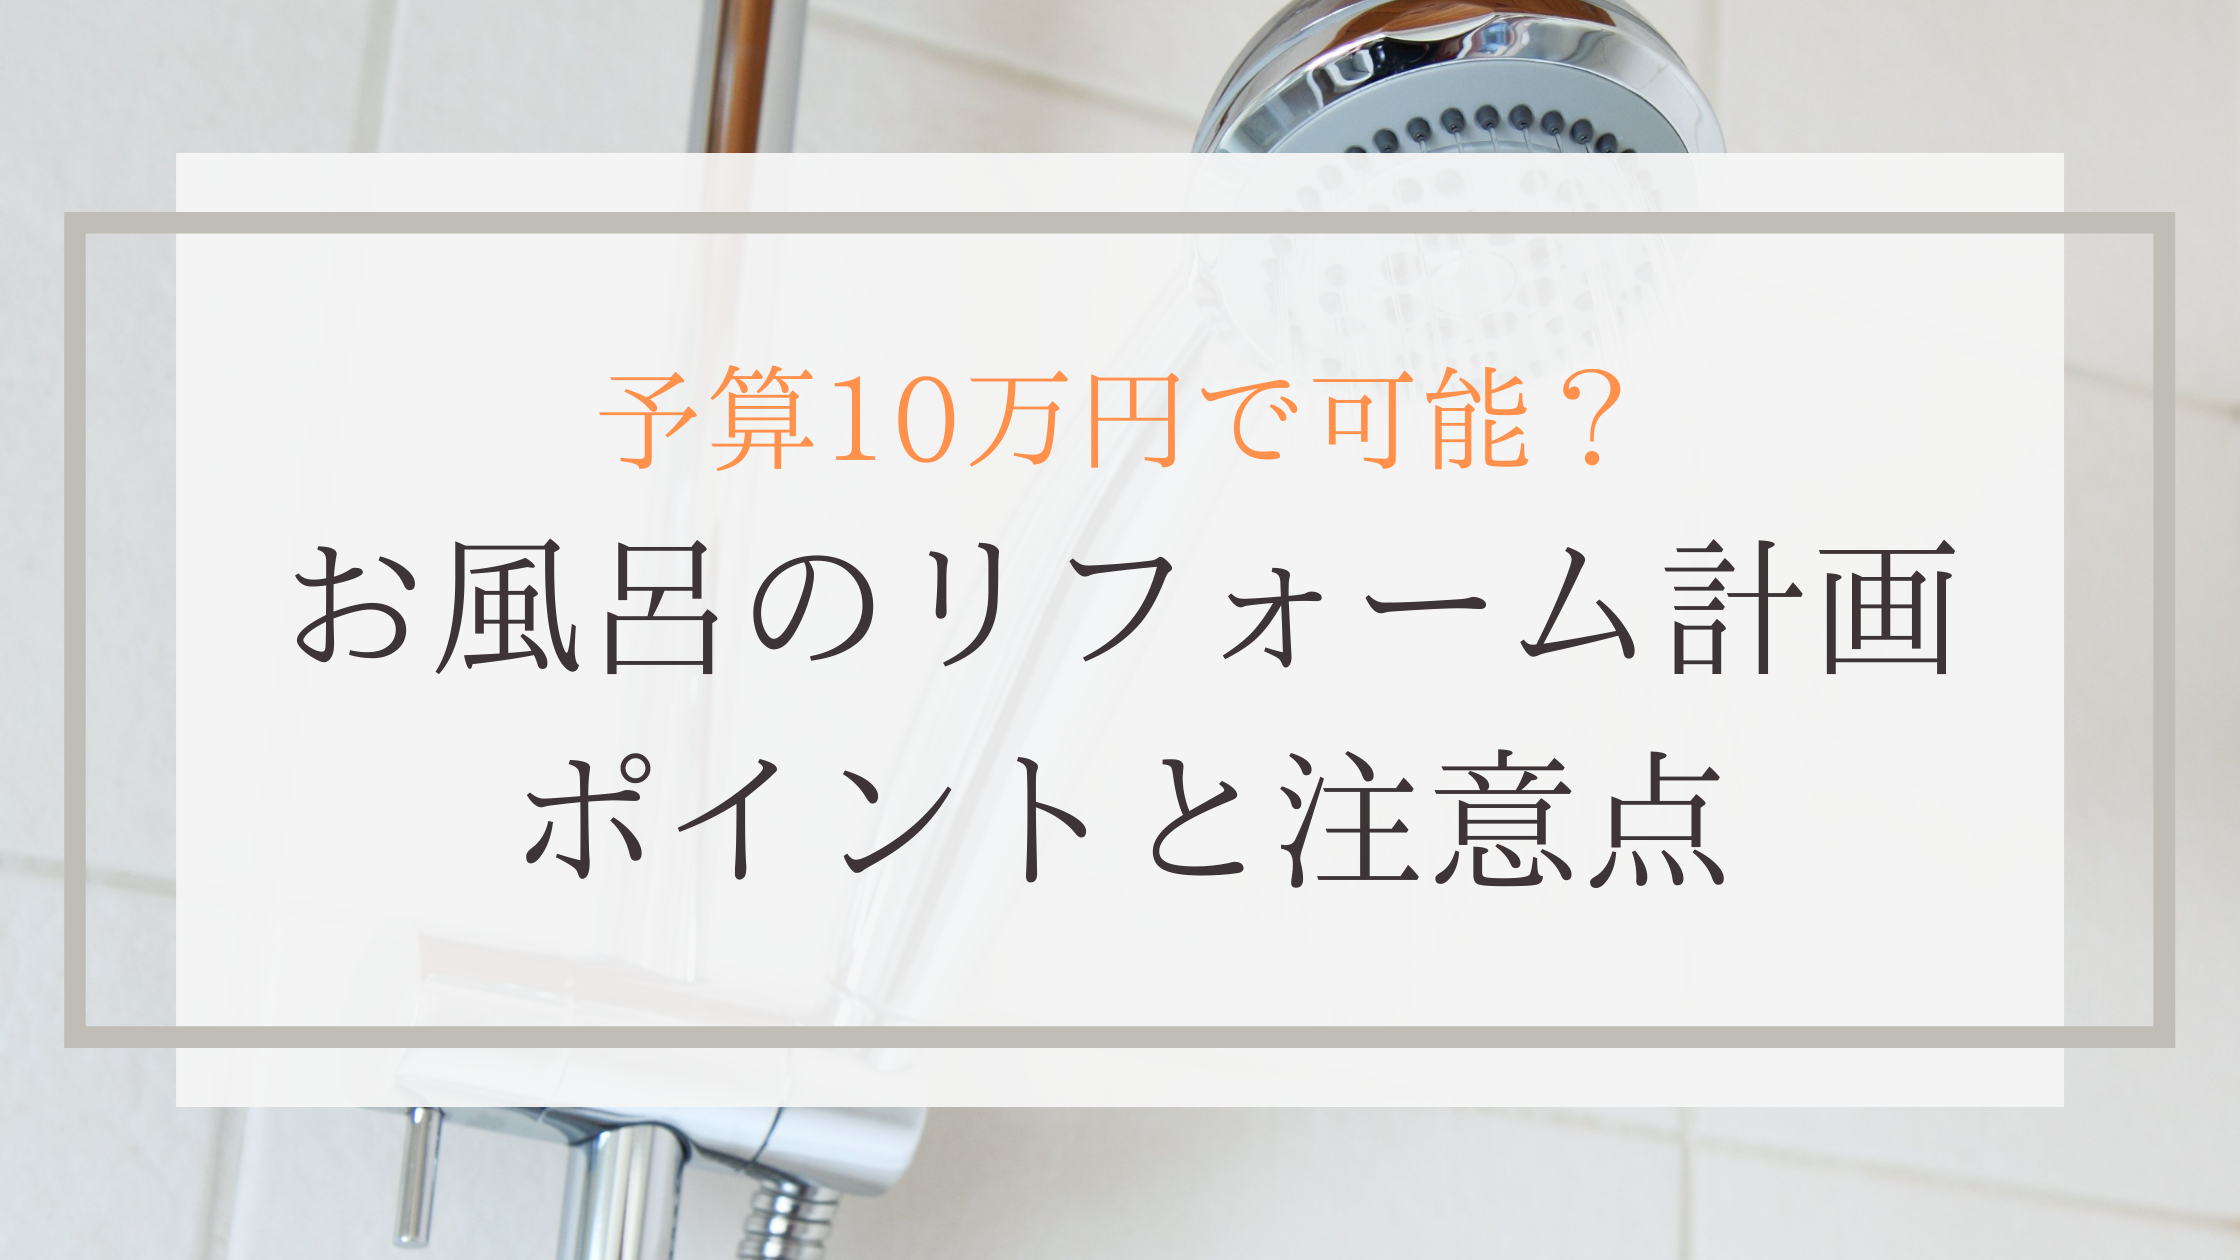 【低予算】10万円〜できるお風呂のリフォーム計画|ポイントと注意点